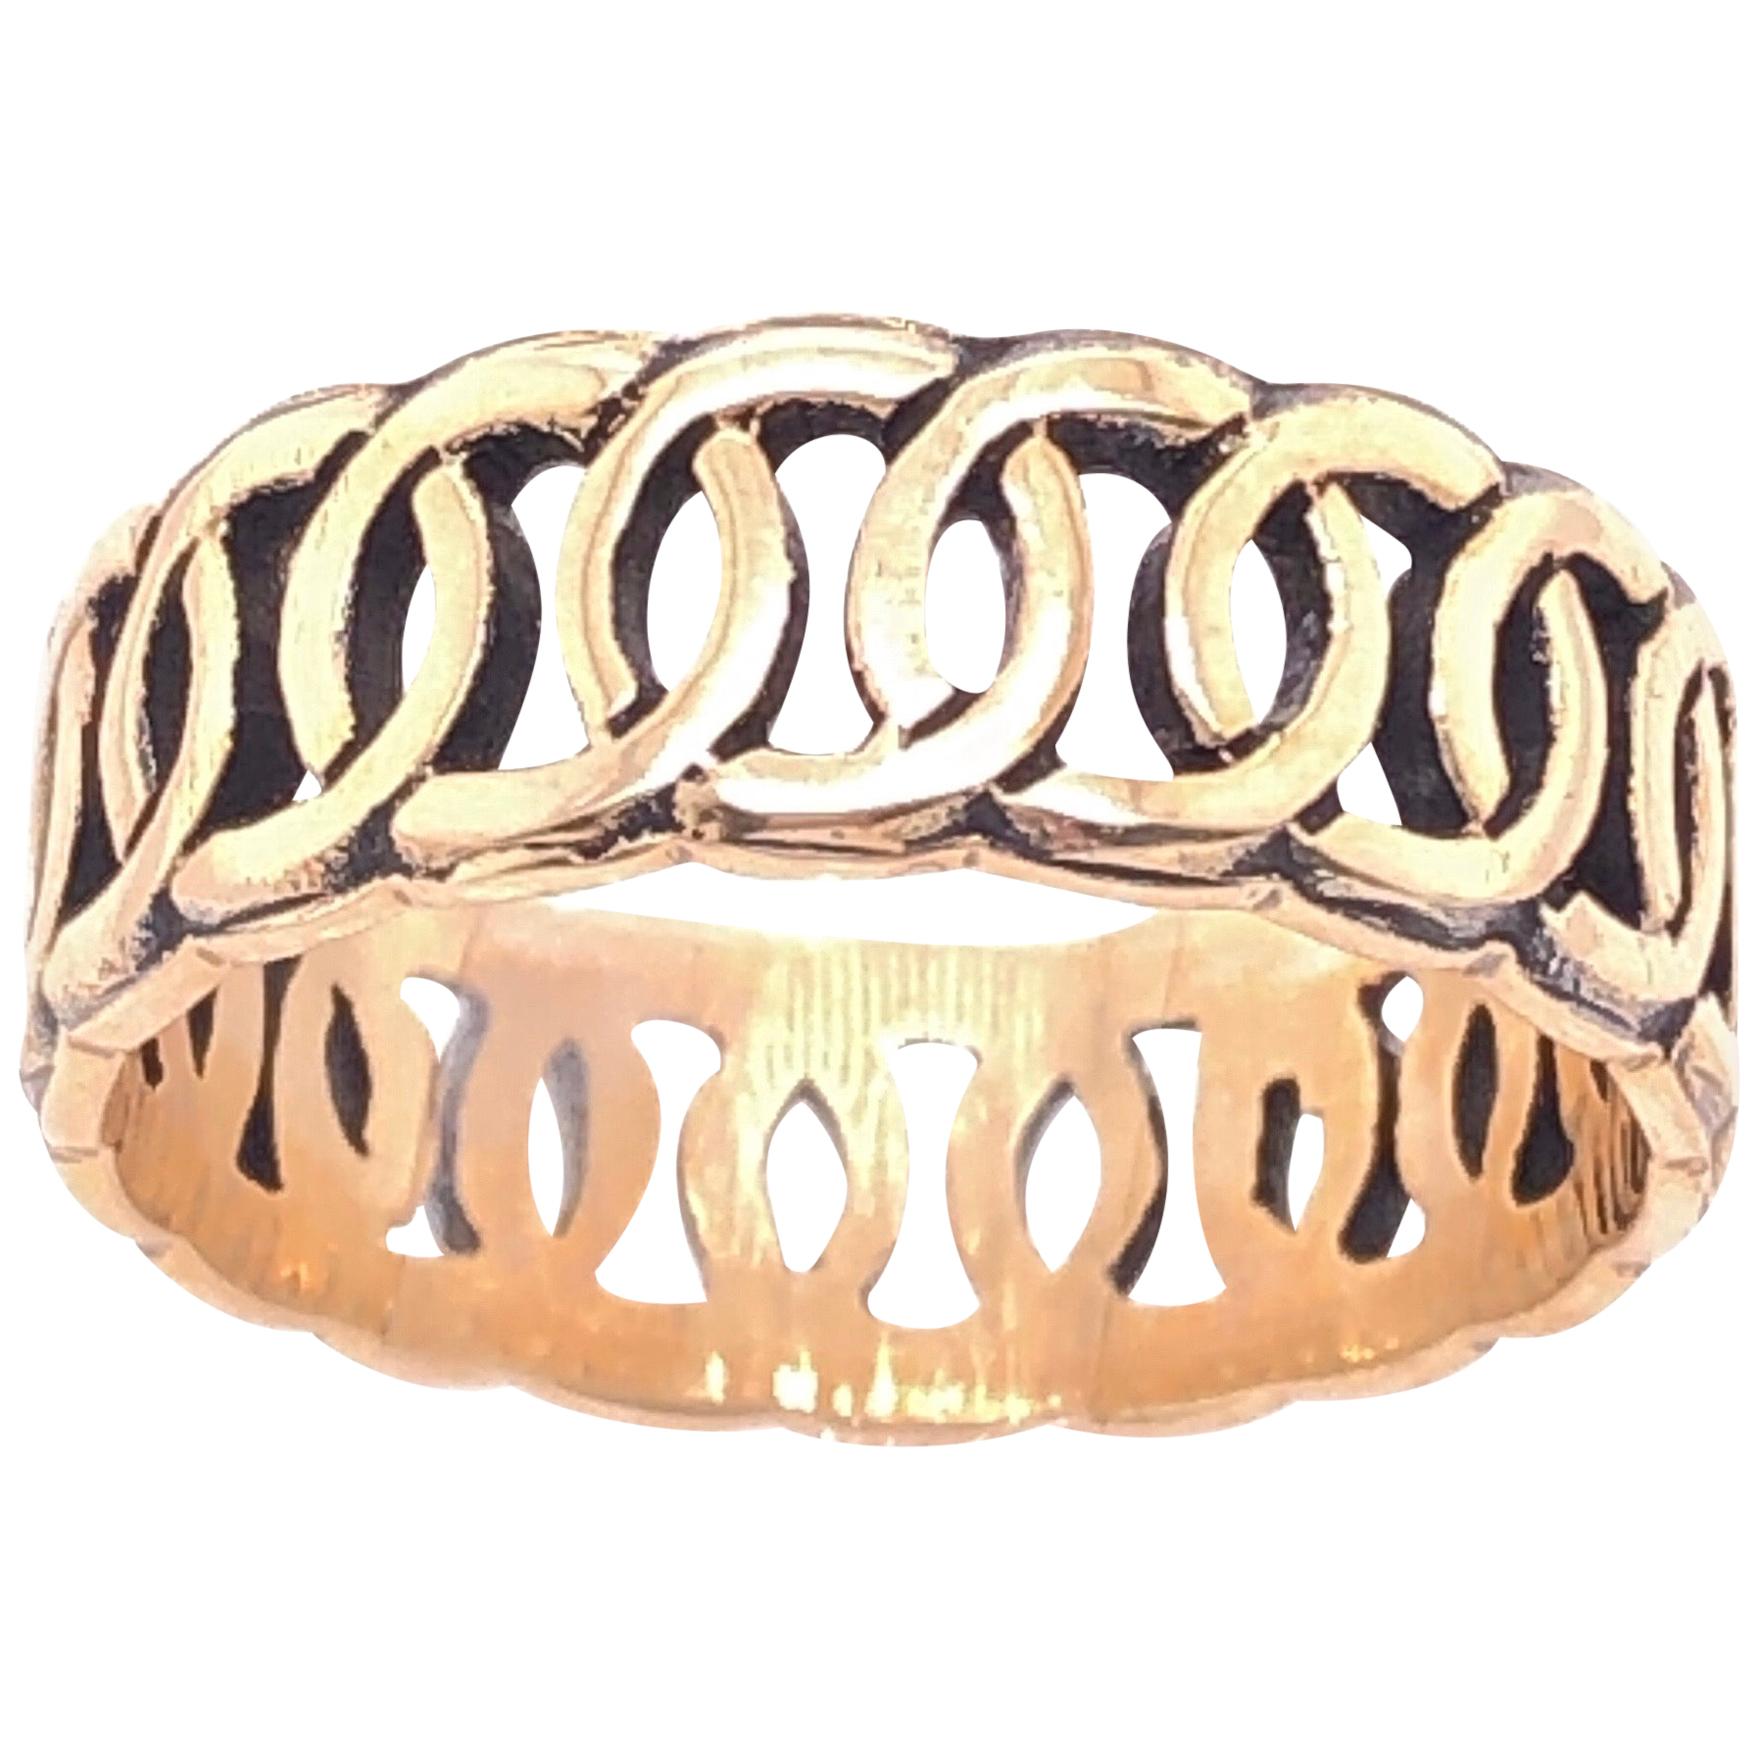 14 Karat Yellow Gold Band/Wedding Ring